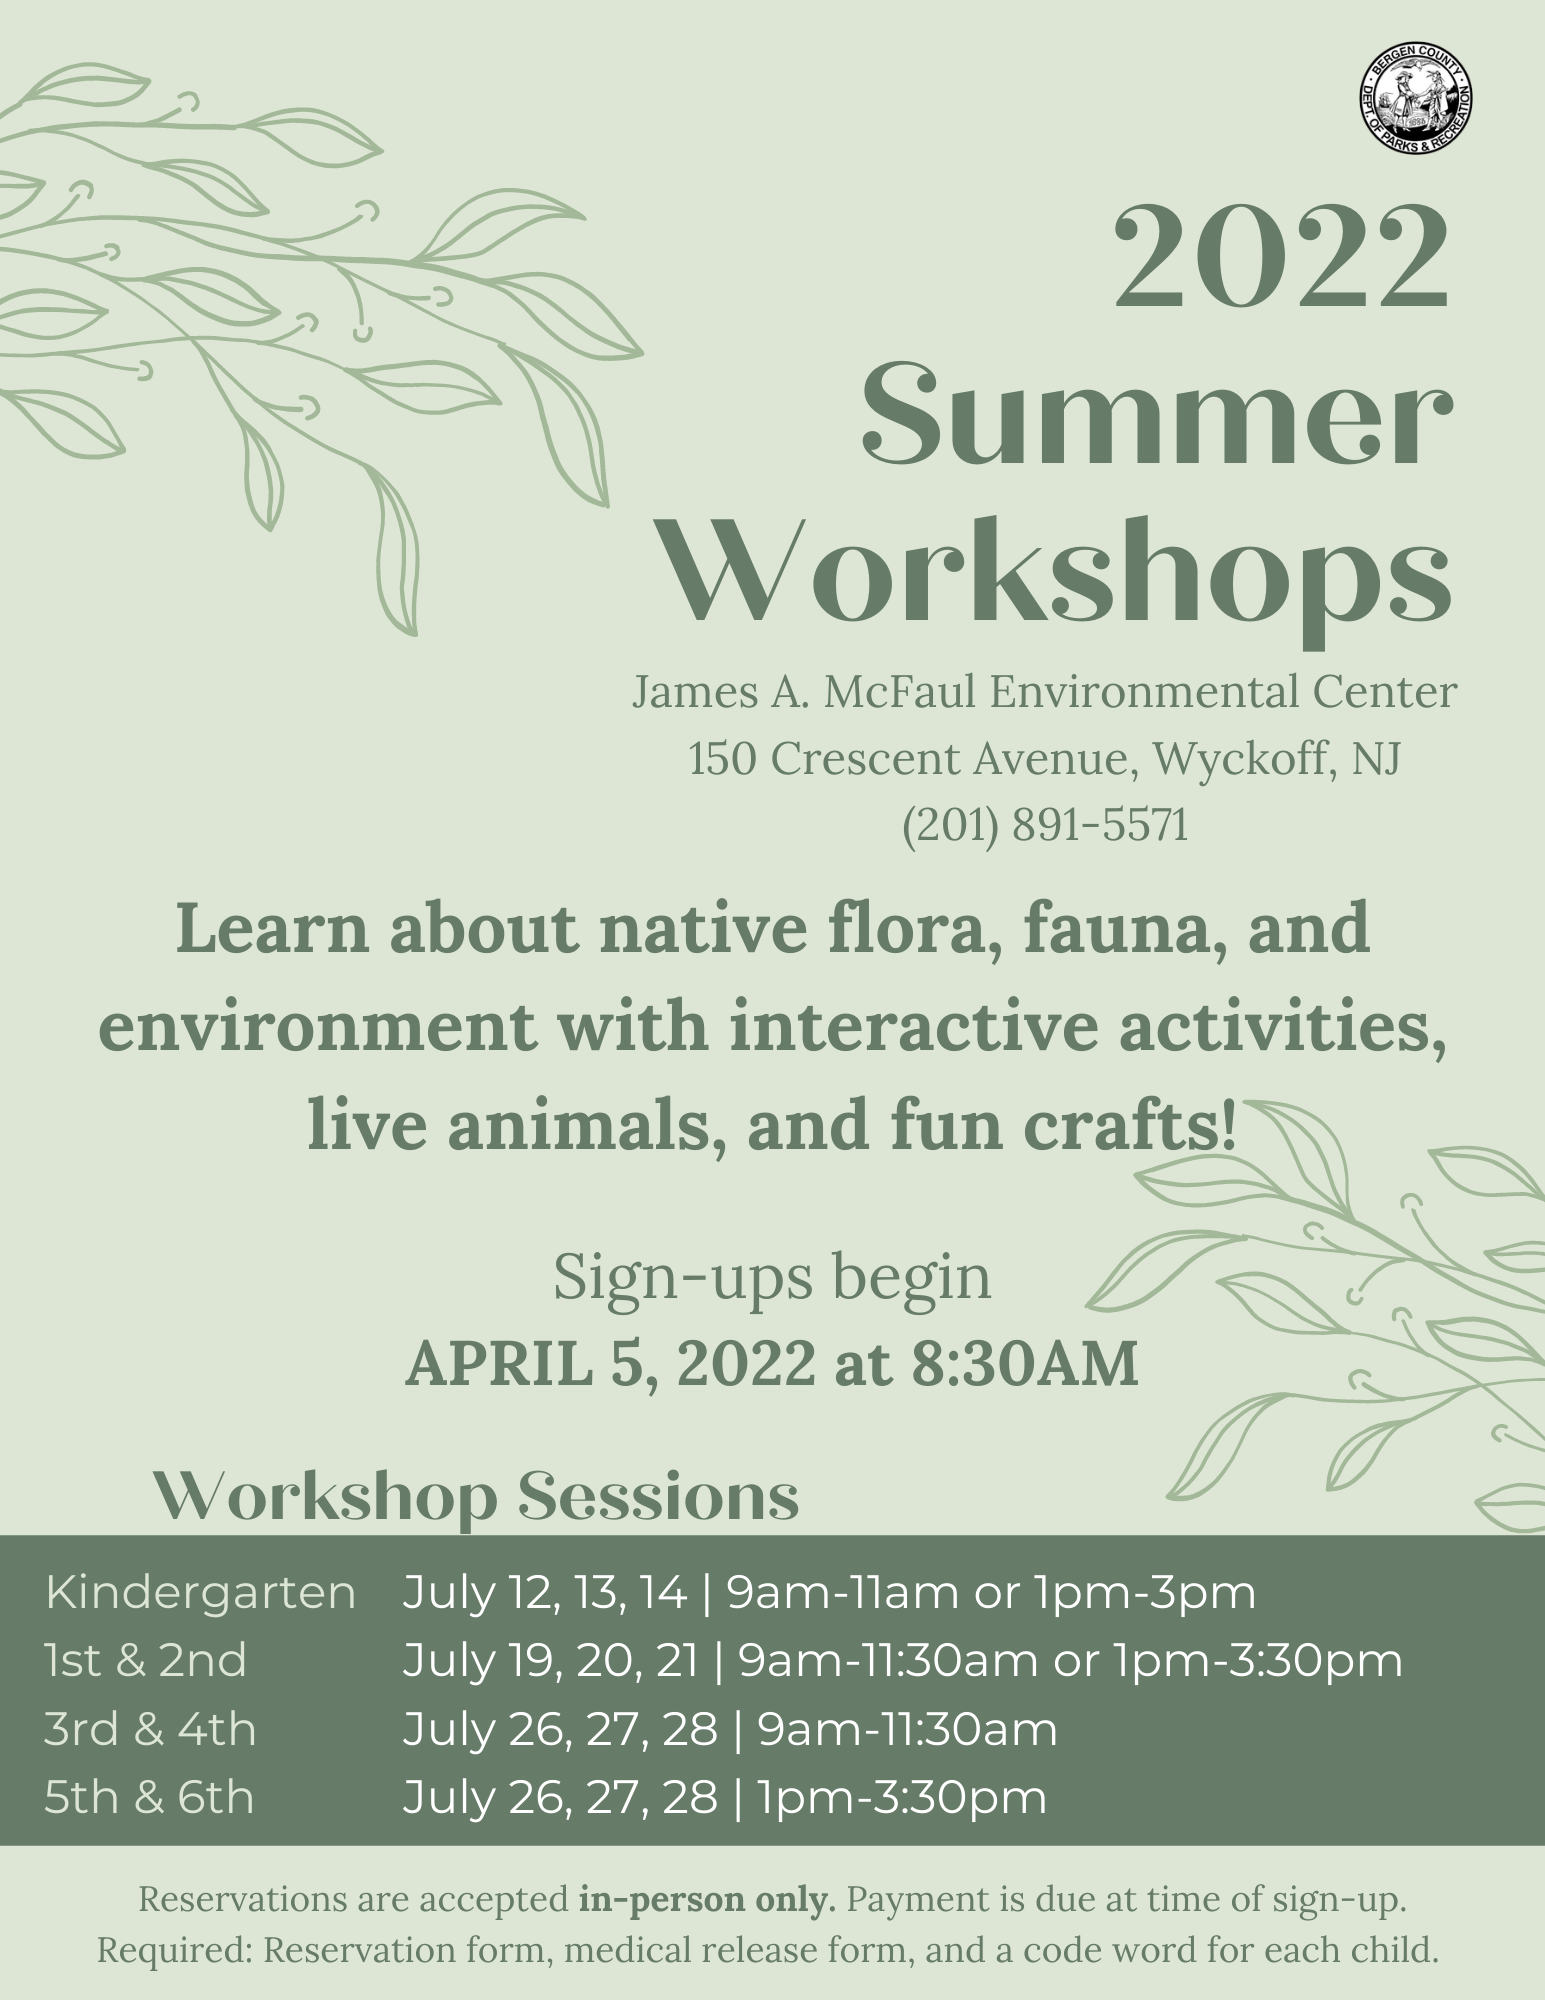 McFaul 2022 Summer Workshops flyer